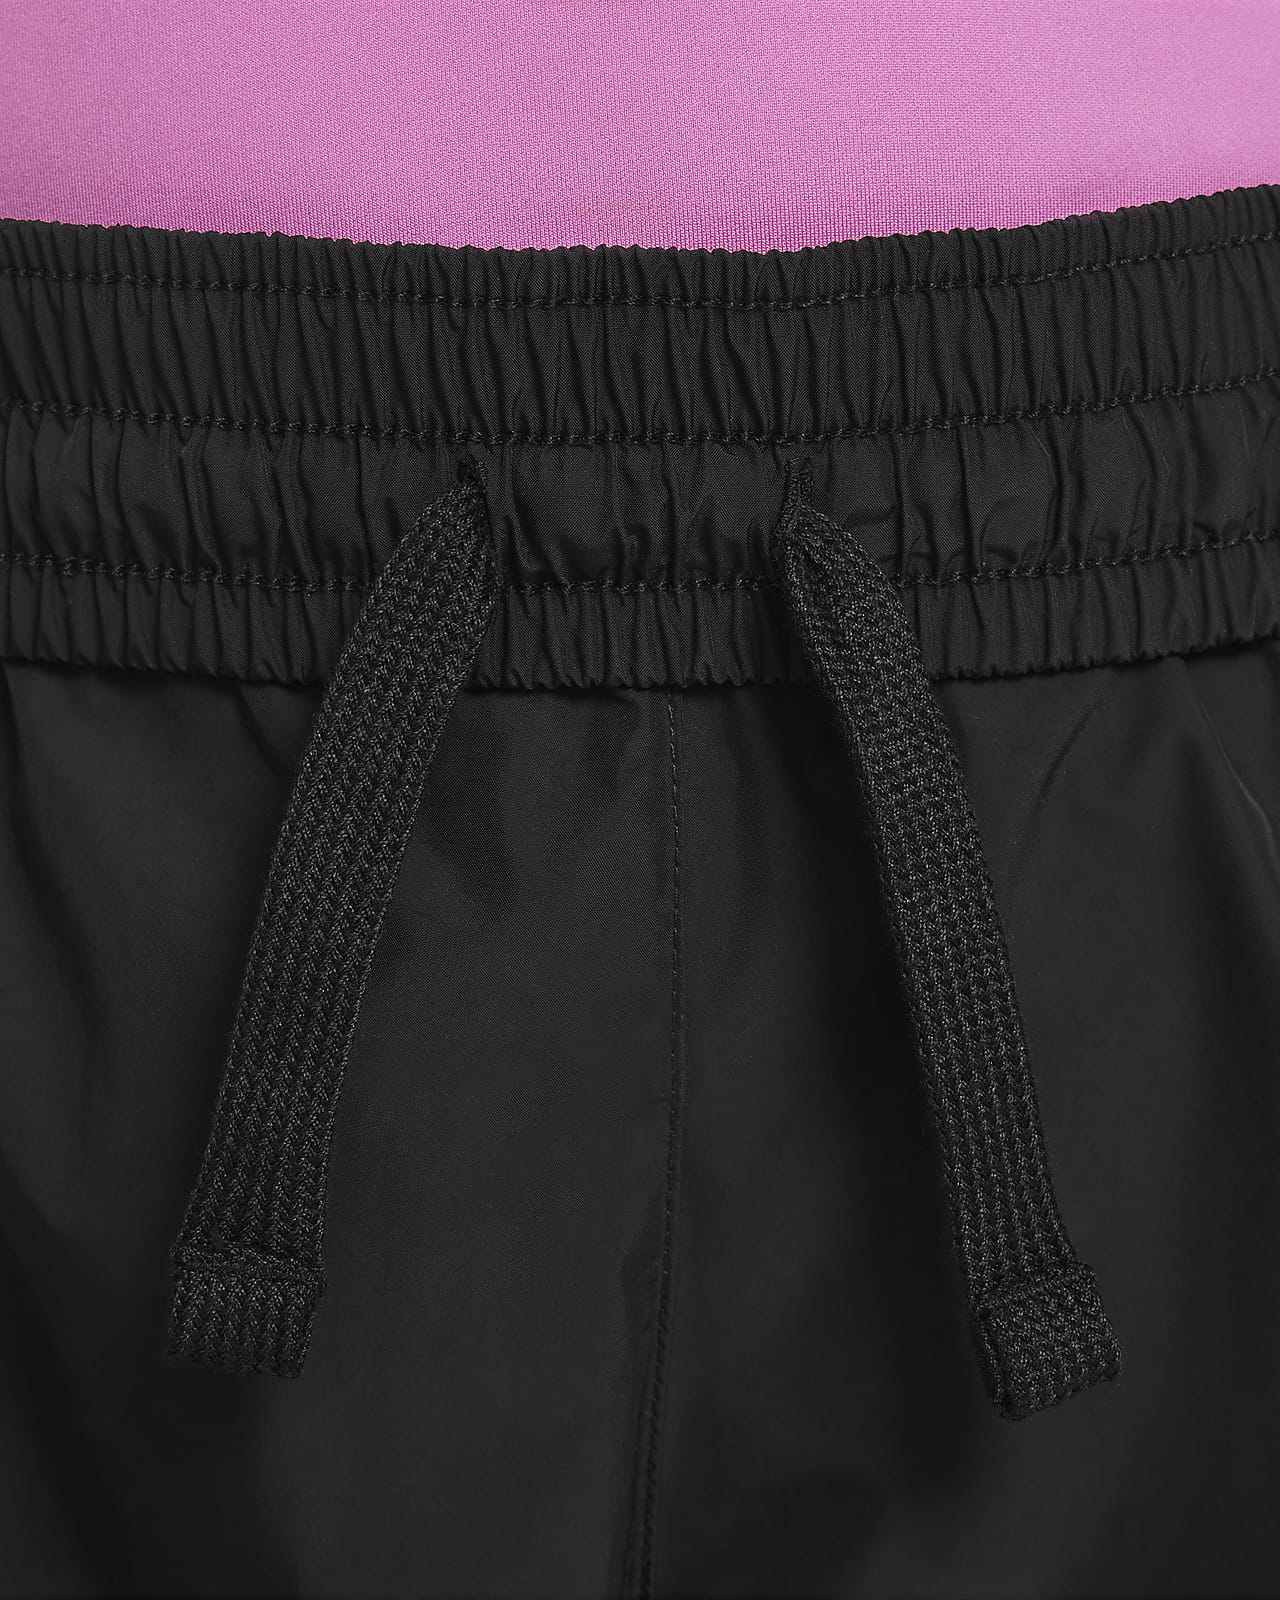 Nike Sportswear Older Kids' (Girls') Woven Trousers. Nike CA